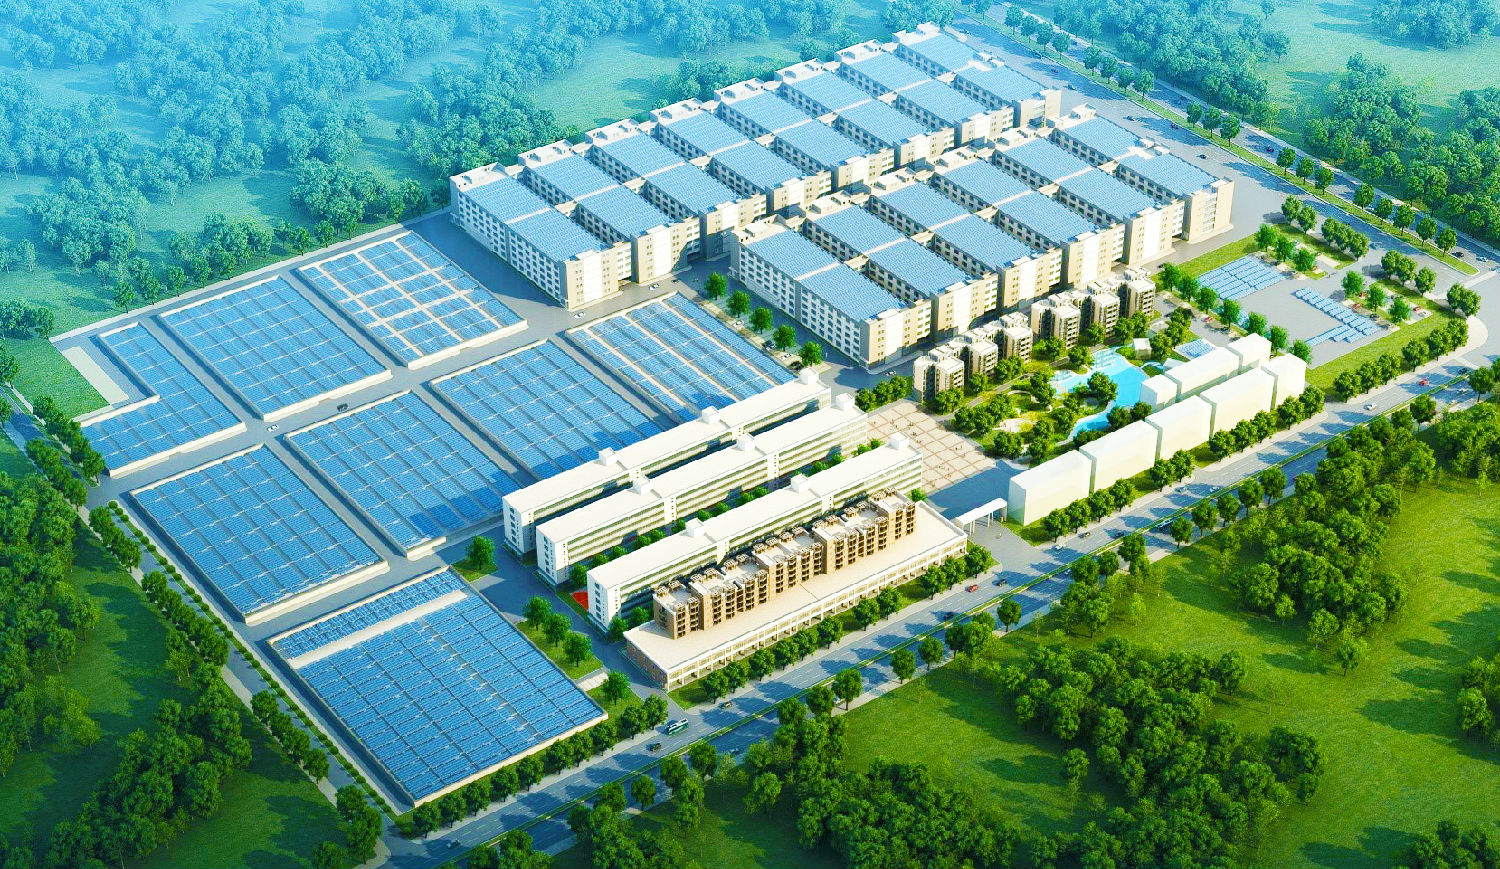 广东惠州敏华工业城12MW大型分布式光伏发电项目